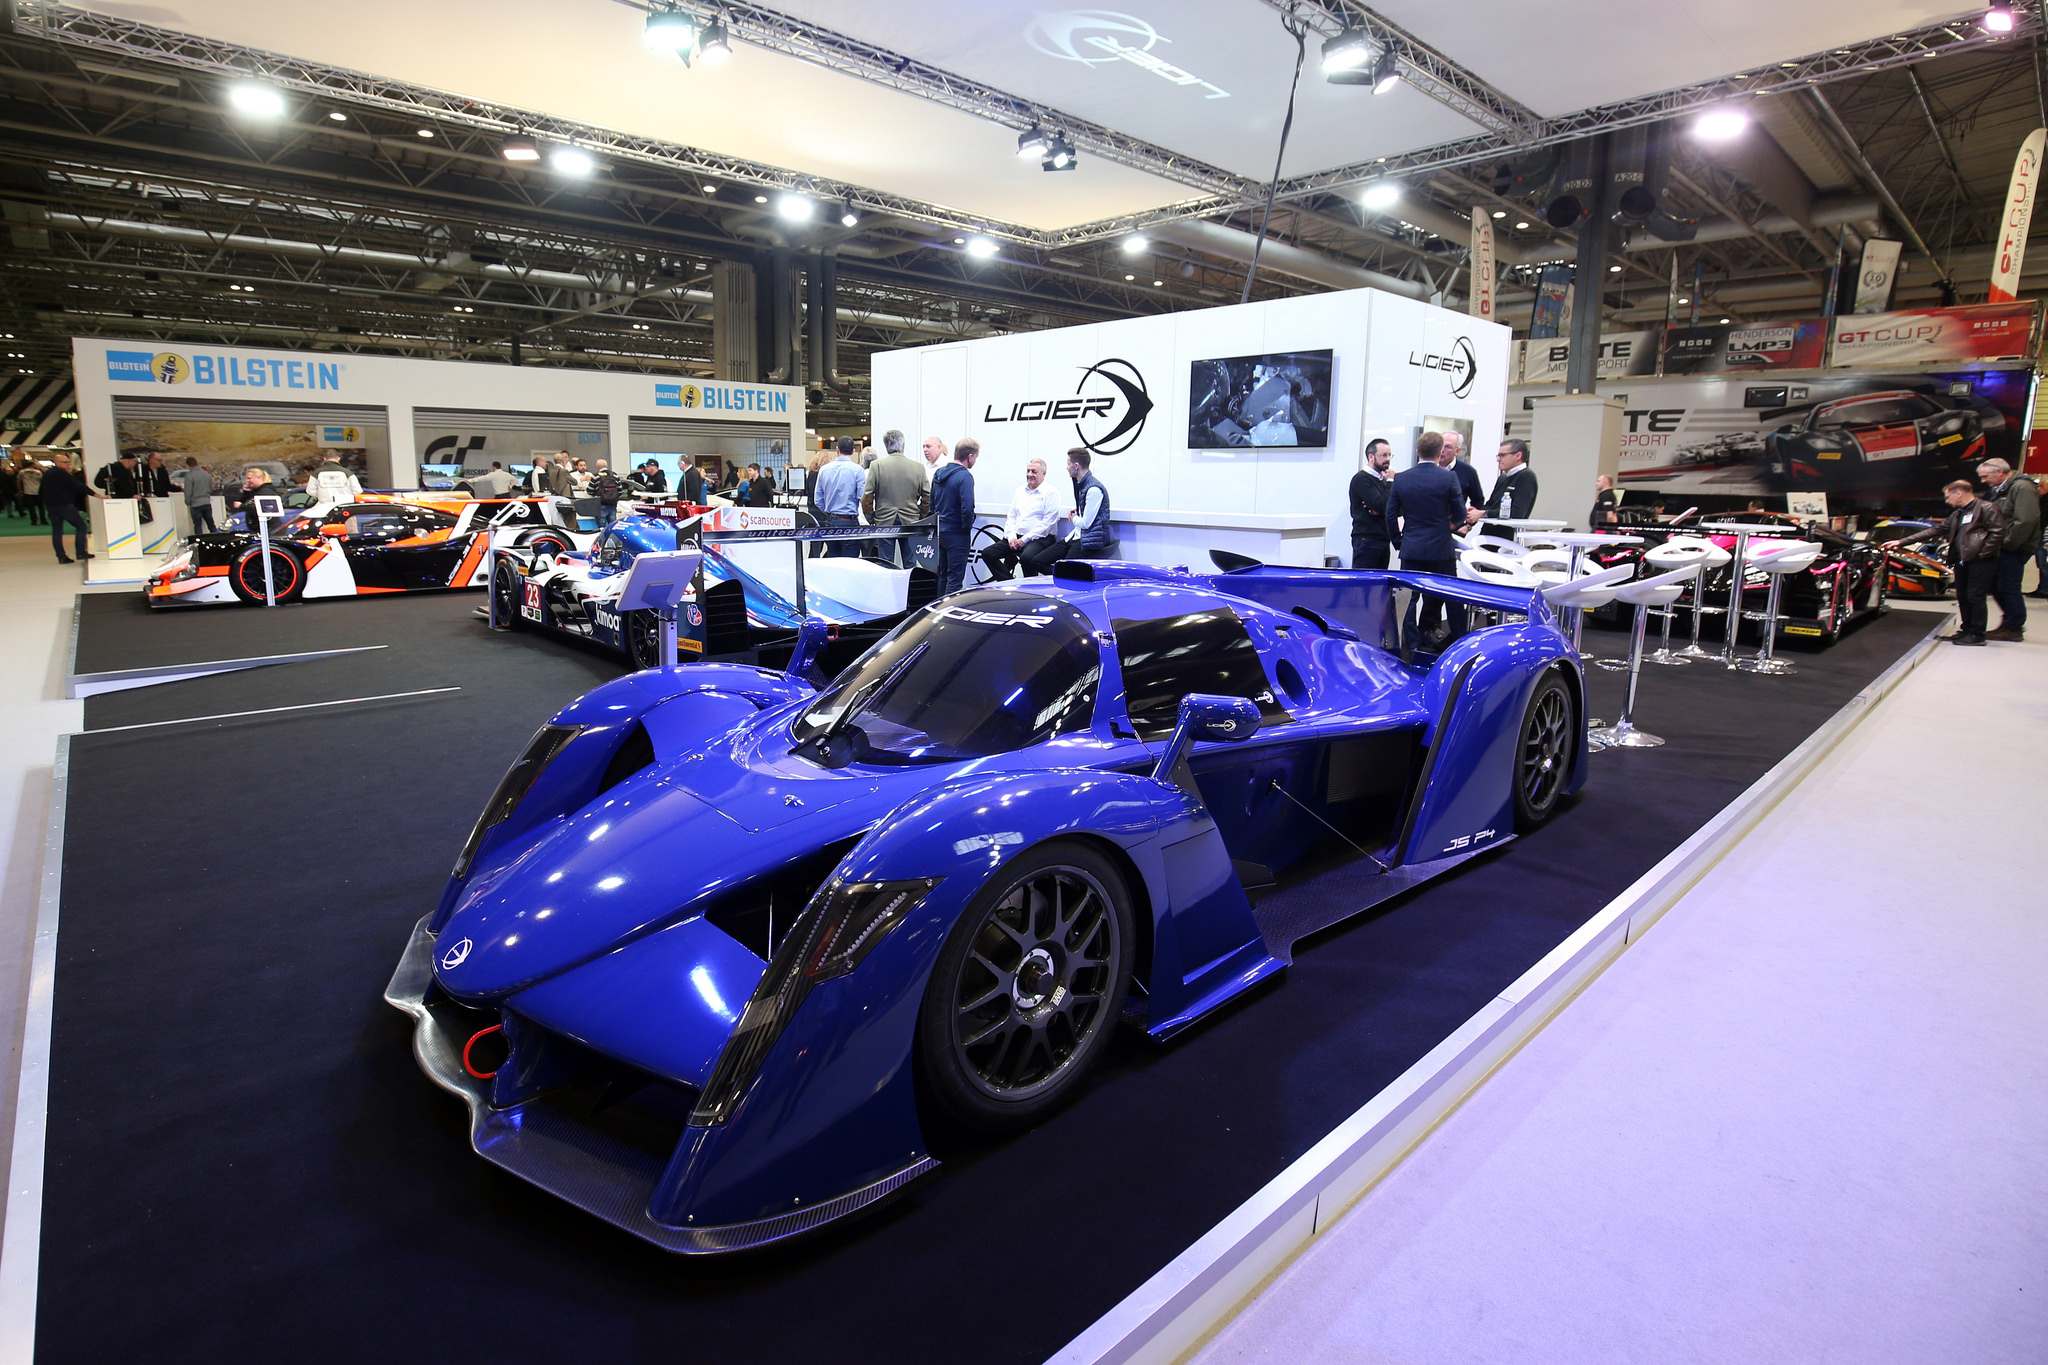 ligier 20187 Ligier at Autosport International Show 2018